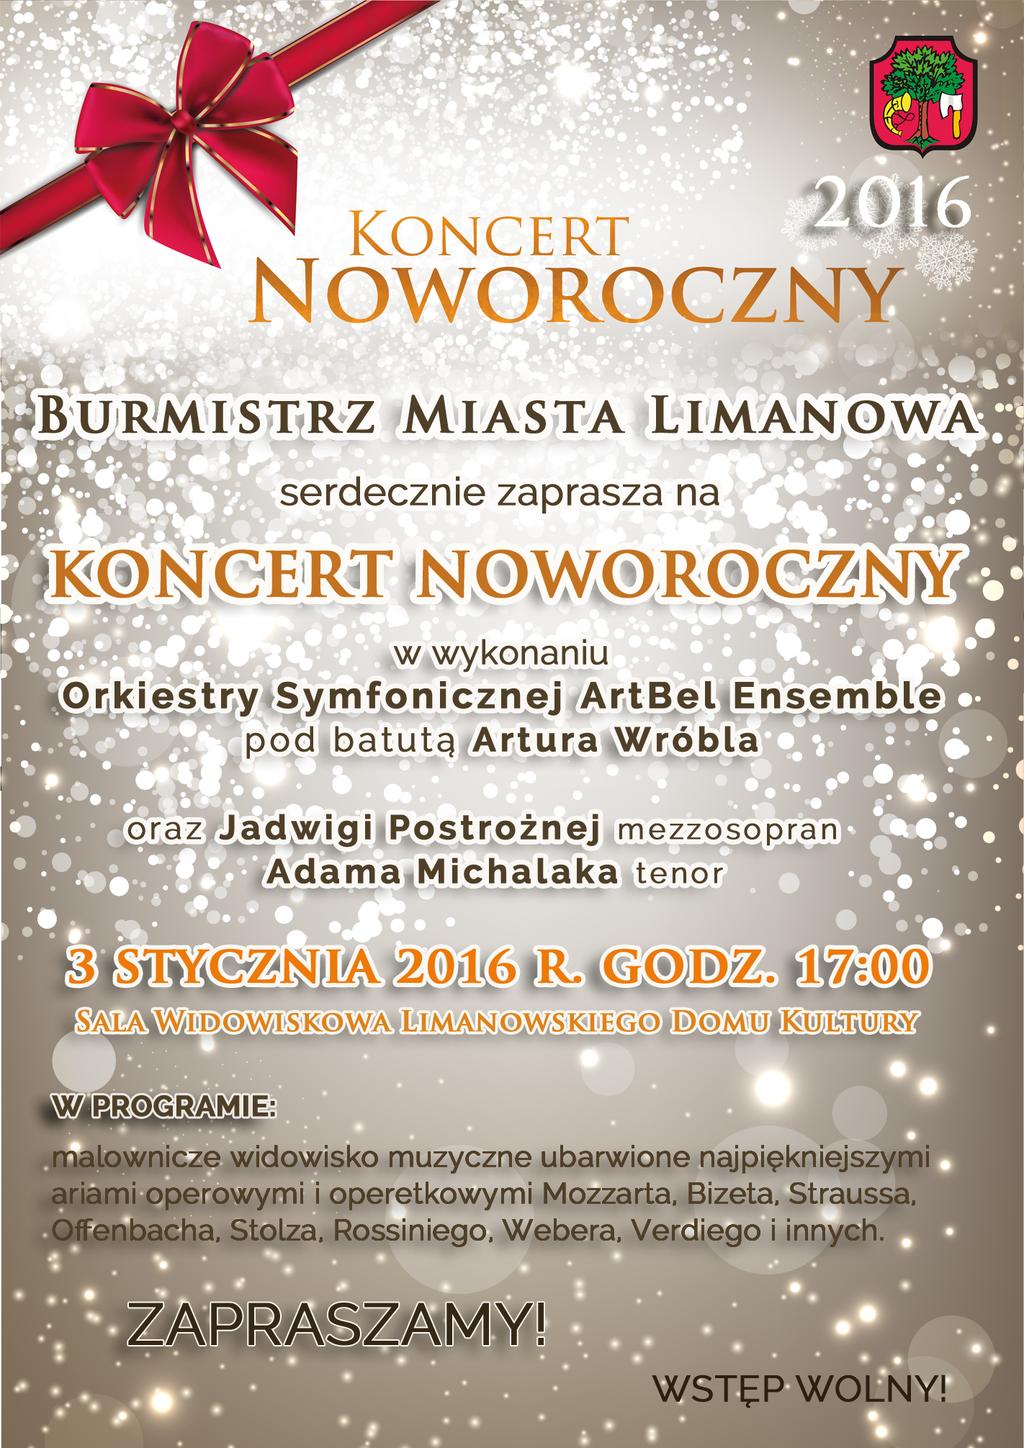 Wiadomości Czwartek, 17 grudnia 2015 Koncert Noworoczny w